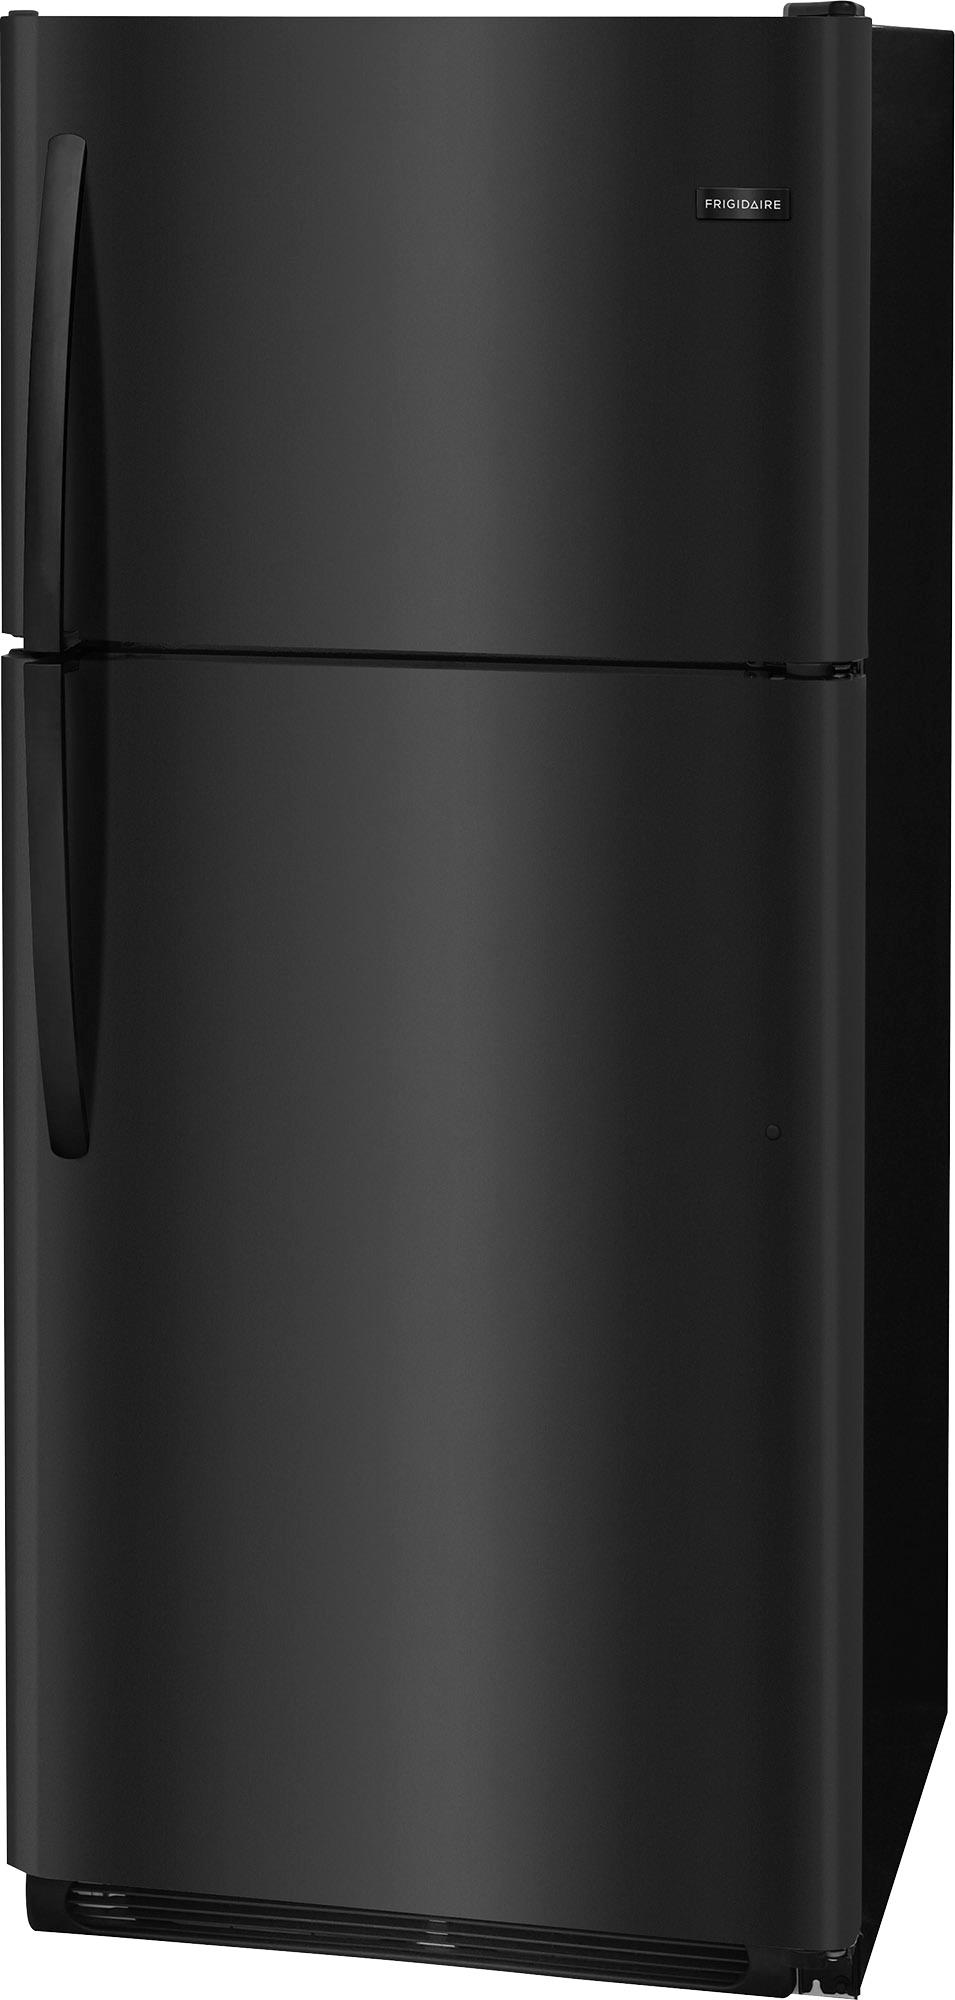 Left View: Frigidaire - 20.4 Cu. Ft. Top-Freezer Refrigerator - Black